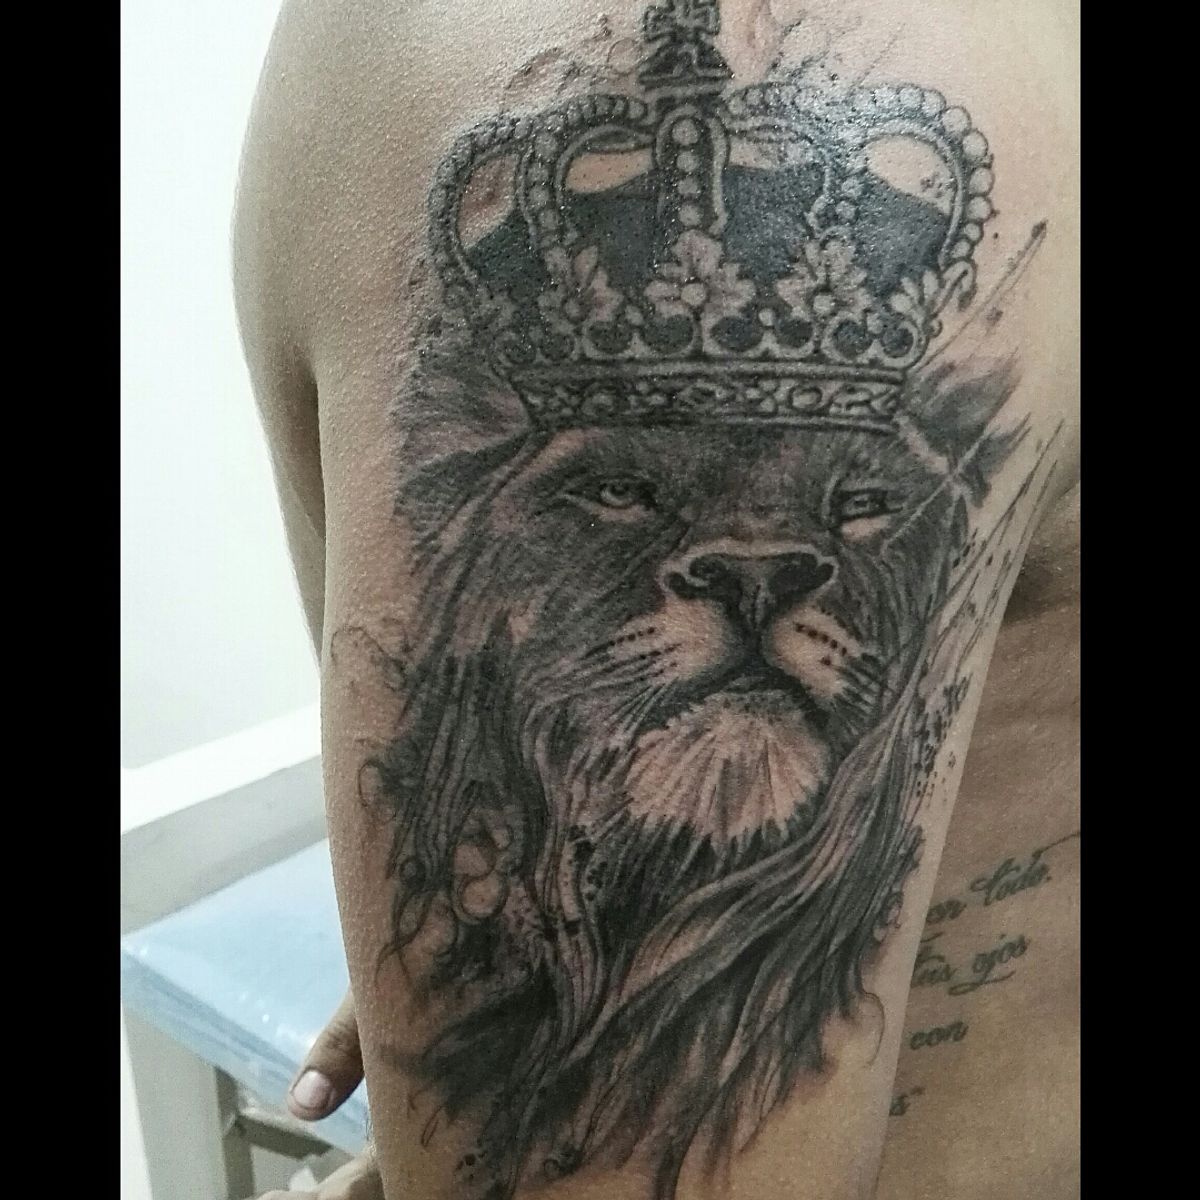 Tattoo uploaded by Diego Diaz • #liontattoo • Tattoodo